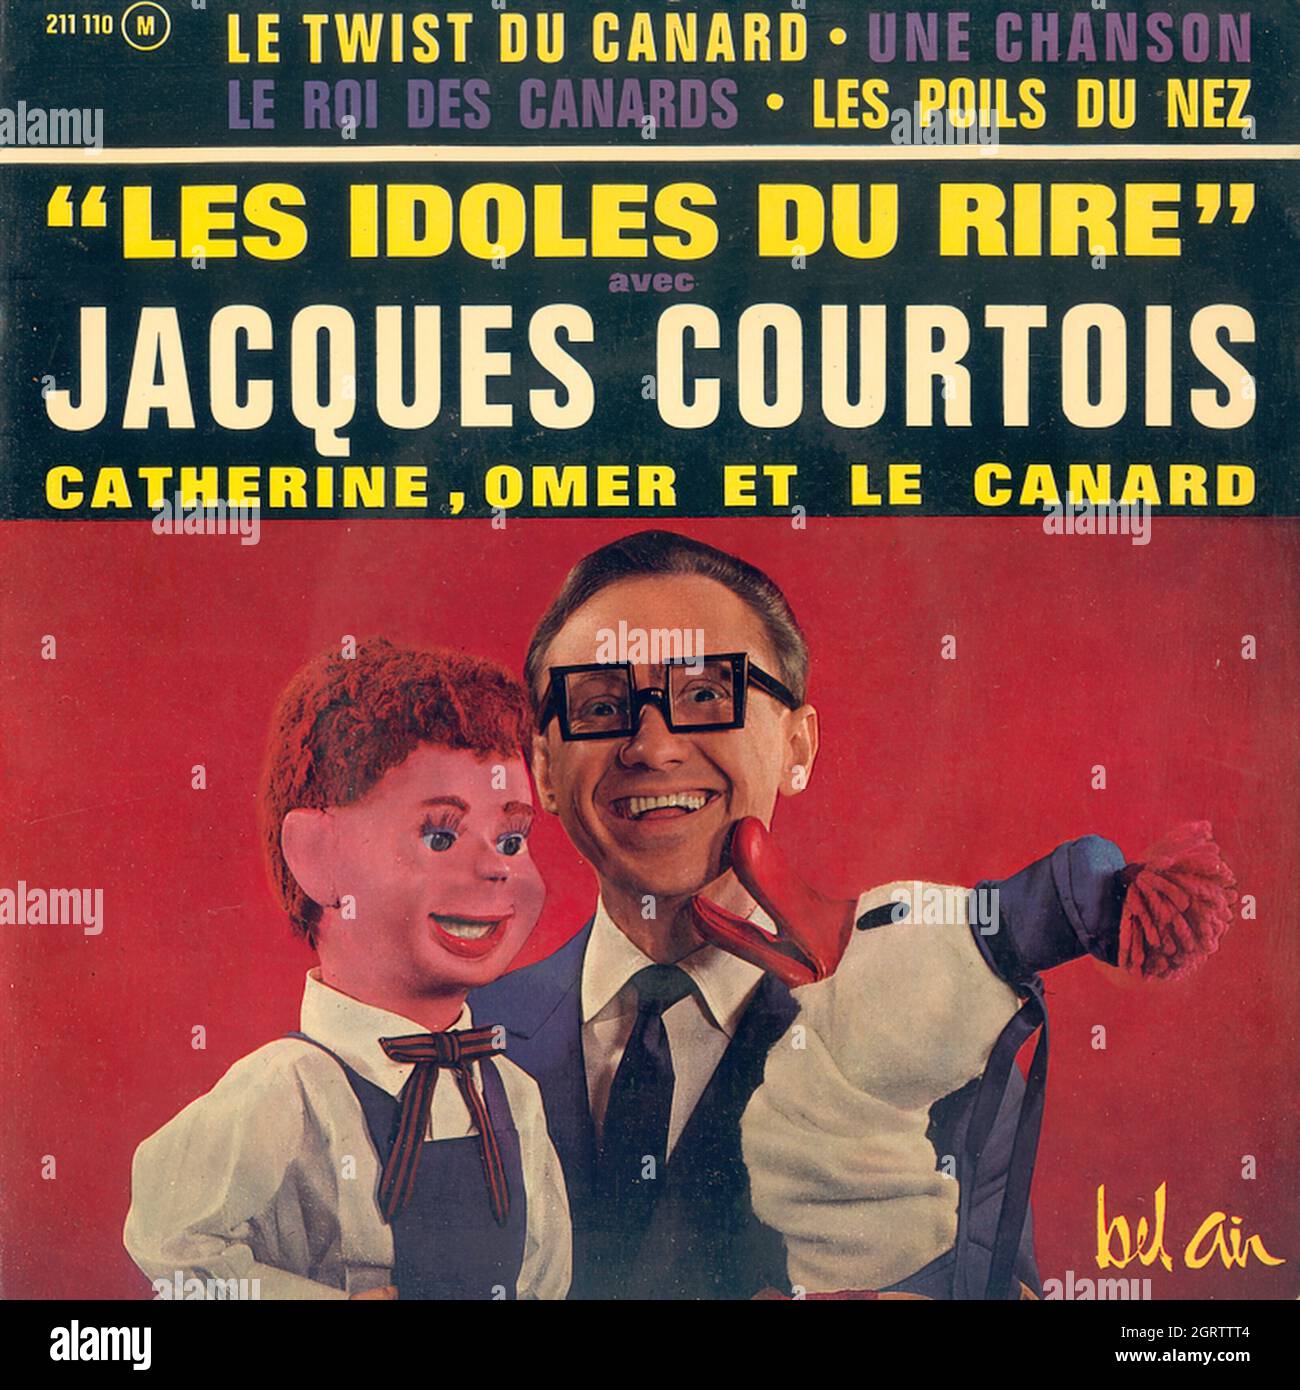 Jacques Courtois - Les idoles du rire EP - Vintage Vinyl Record Cover Stock Photo